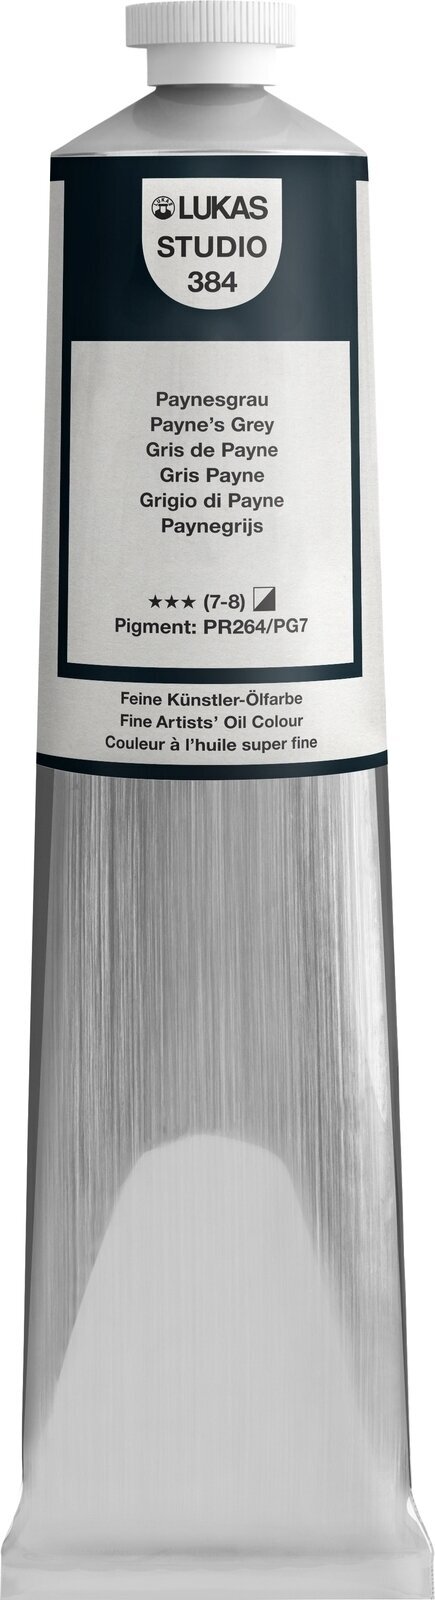 Oljefärg Lukas Studio Oil Paint Aluminium Tube Oljefärg Payne's Grey 200 ml 1 st